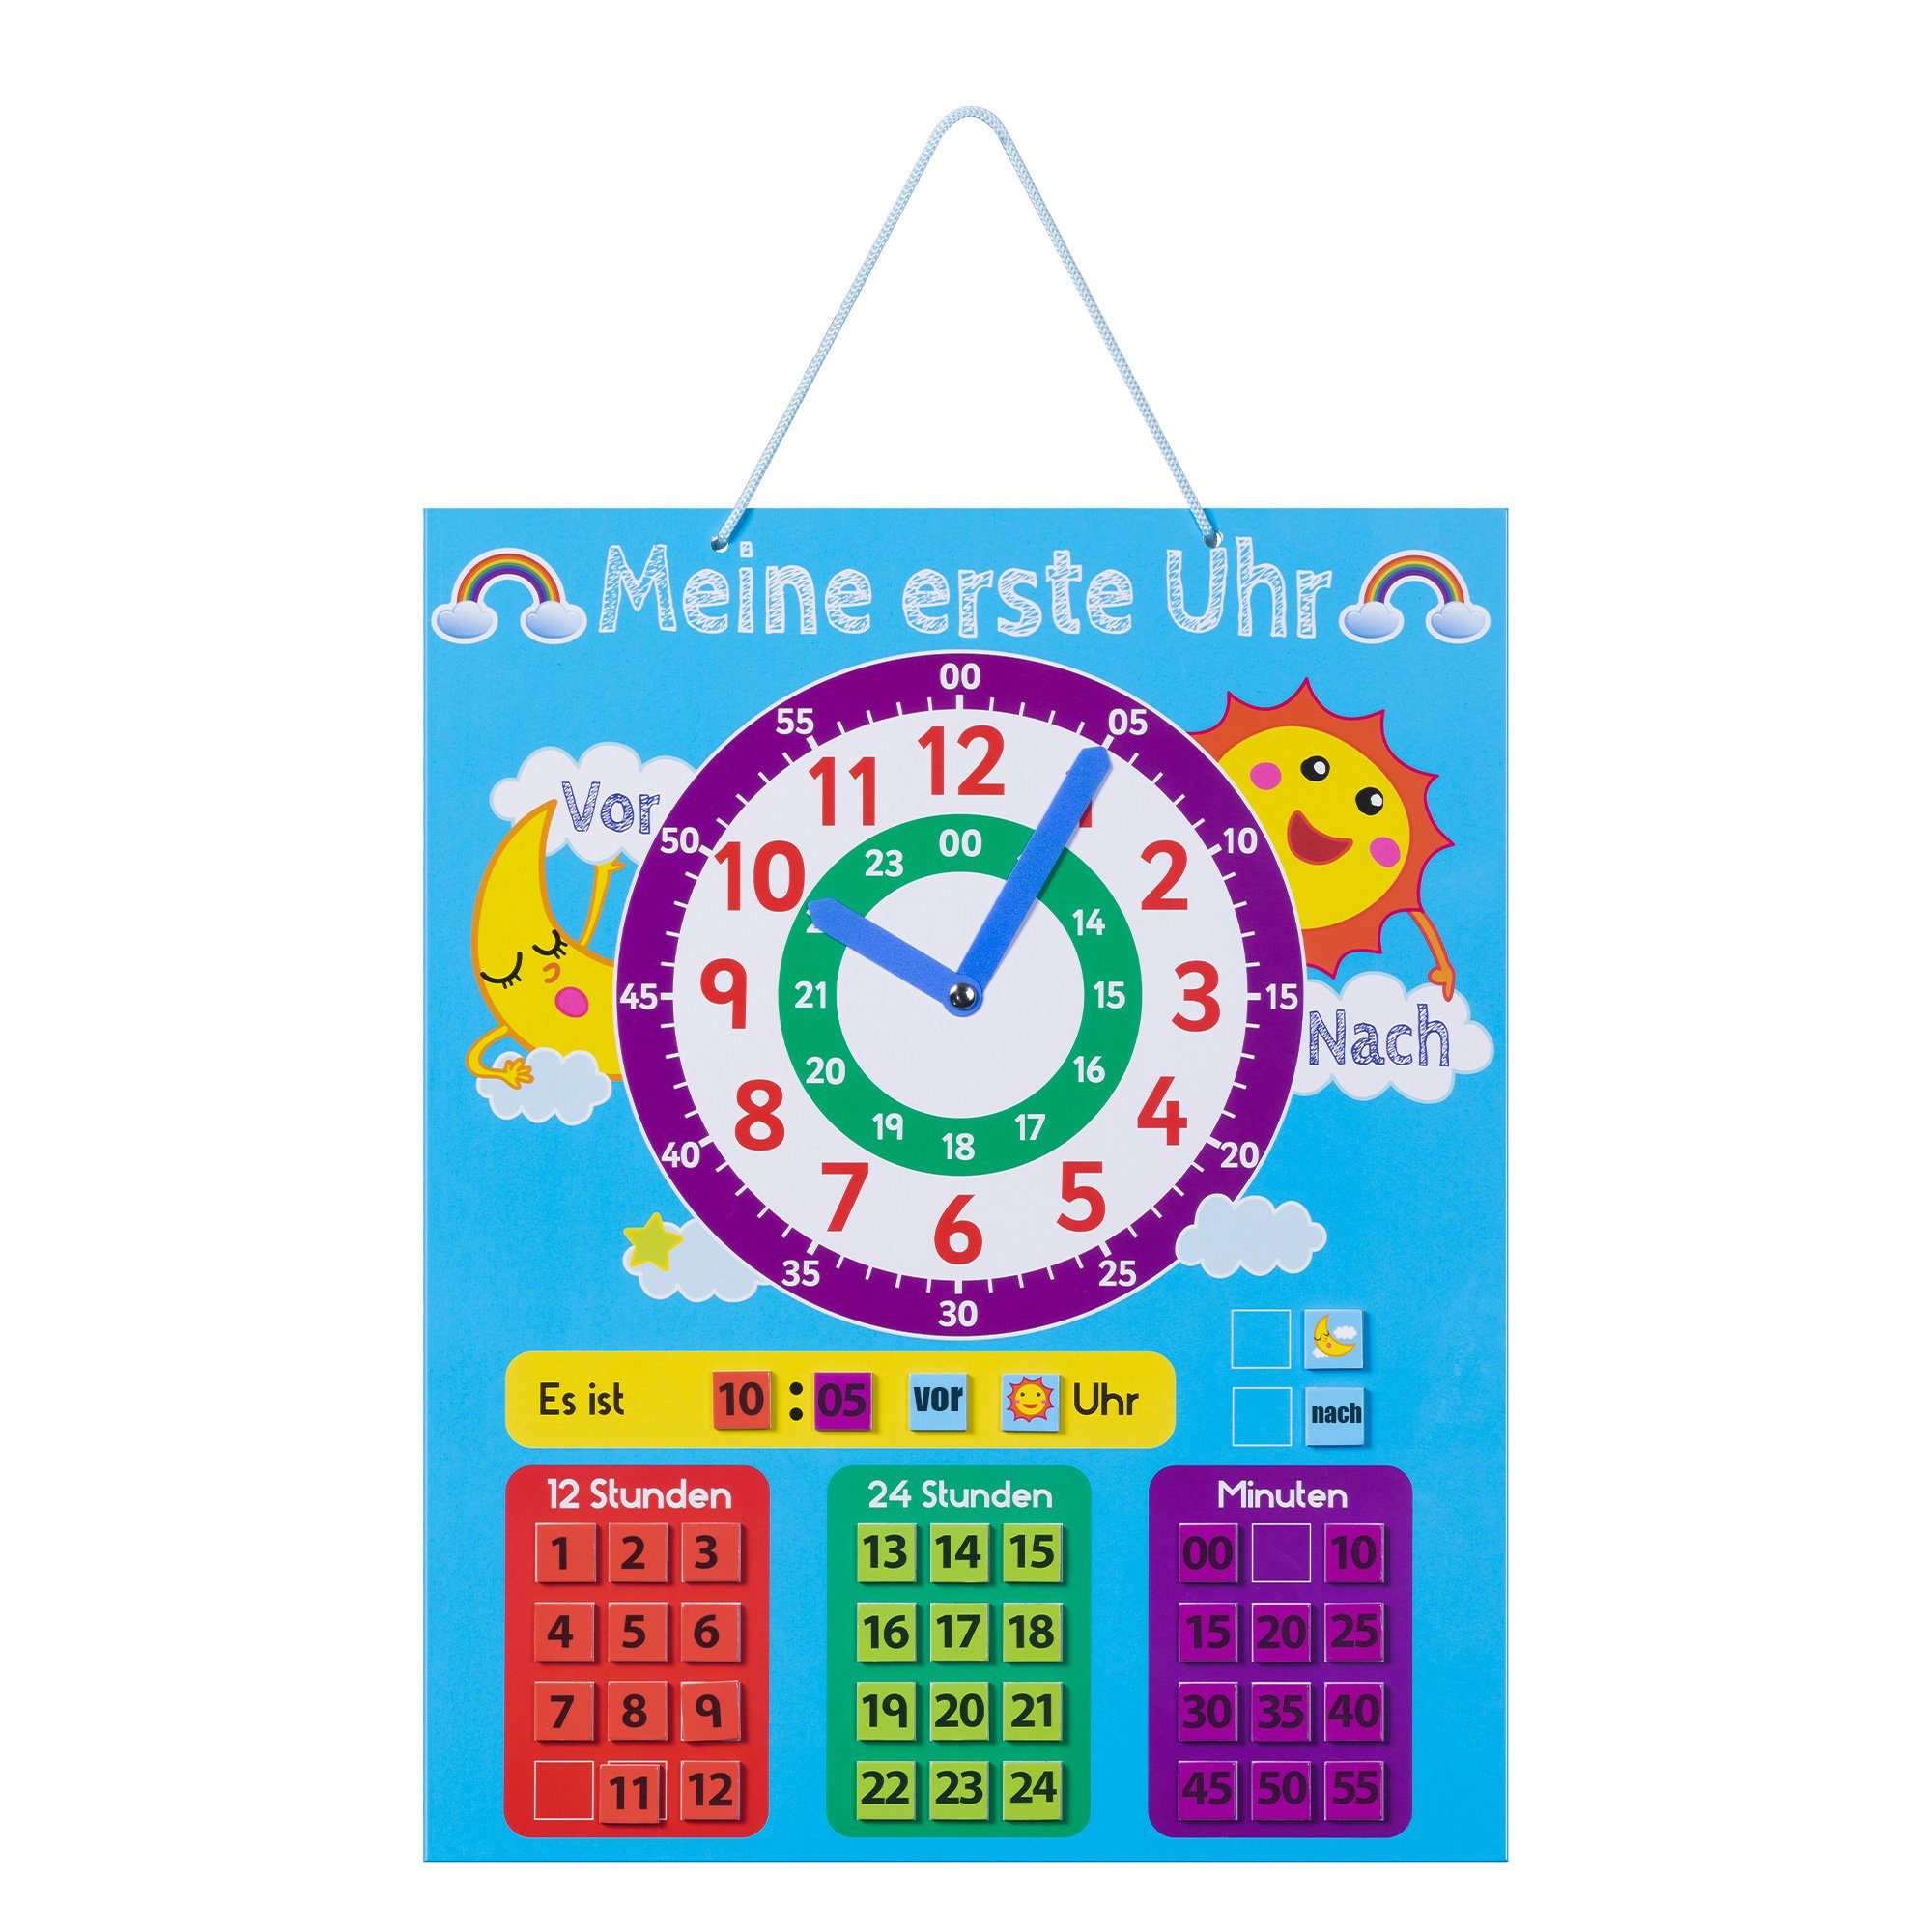 Navaris Lernspielzeug, Lernuhr für Kinder magnetisch - Uhrzeit lernen -  Magnet Lerntafel ab 3 Jahre - Spielzeug Uhr - Kinderlernuhr mit 40 Magneten  - deutsch online kaufen | OTTO